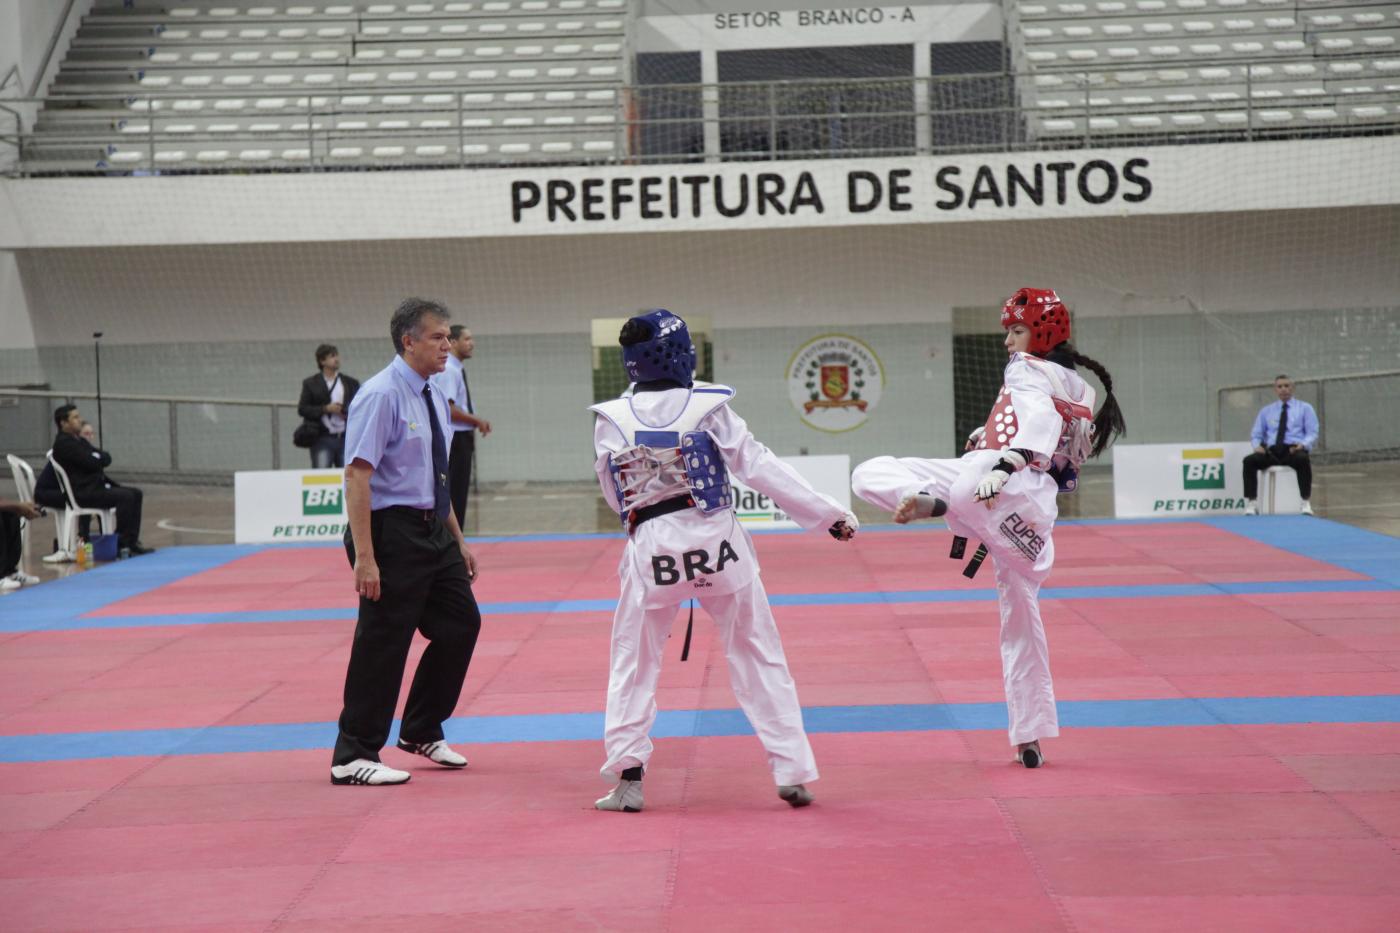 Duas atletas de taekwondo em luta sobre tatame. Ao lado esquerdo está o árbitro. #Pracegover